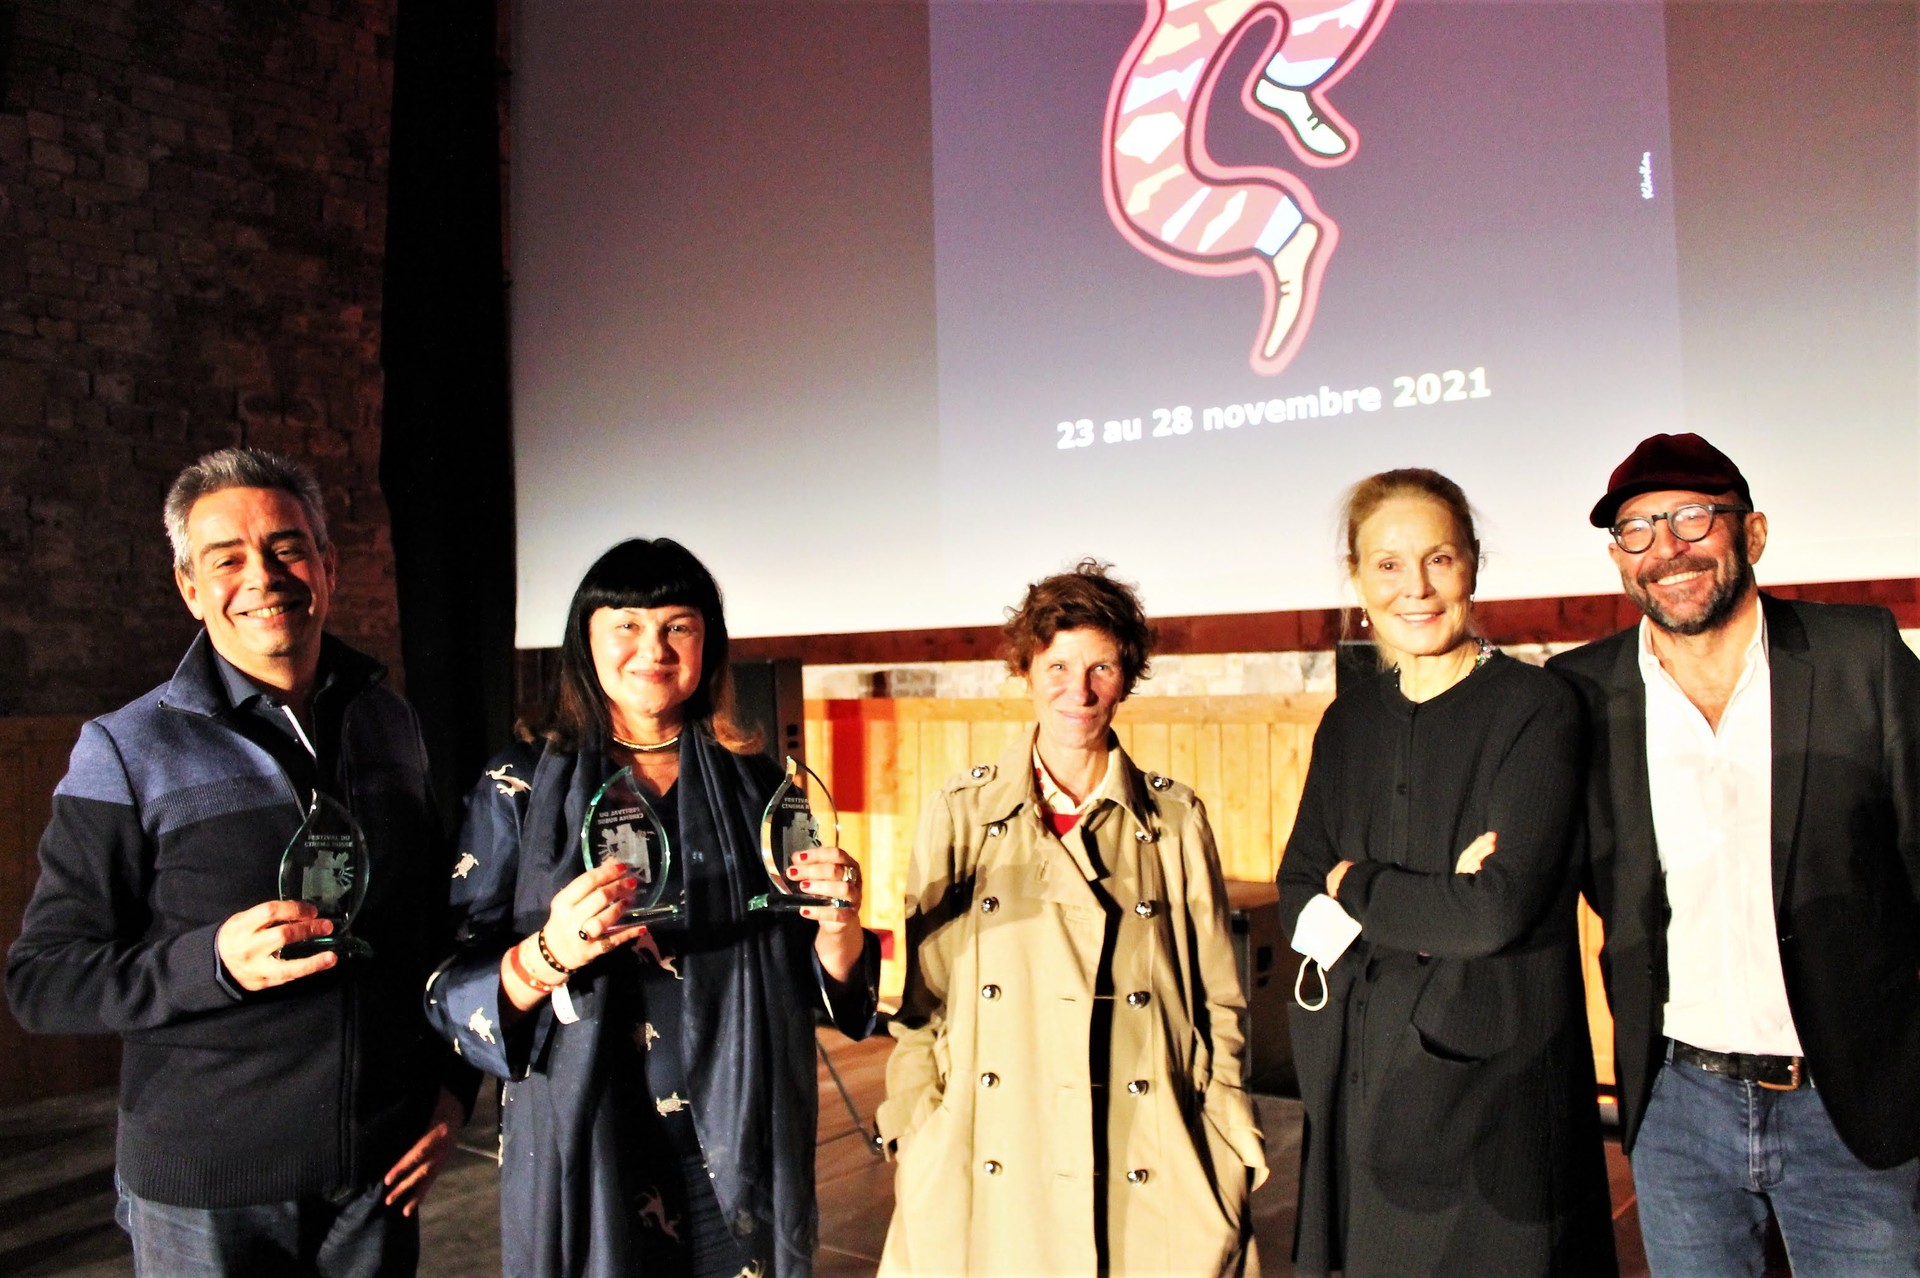 De gauche à droite : Sitora Alieva, Marion Vernoux, Marthe Keller et Gildas le Gac